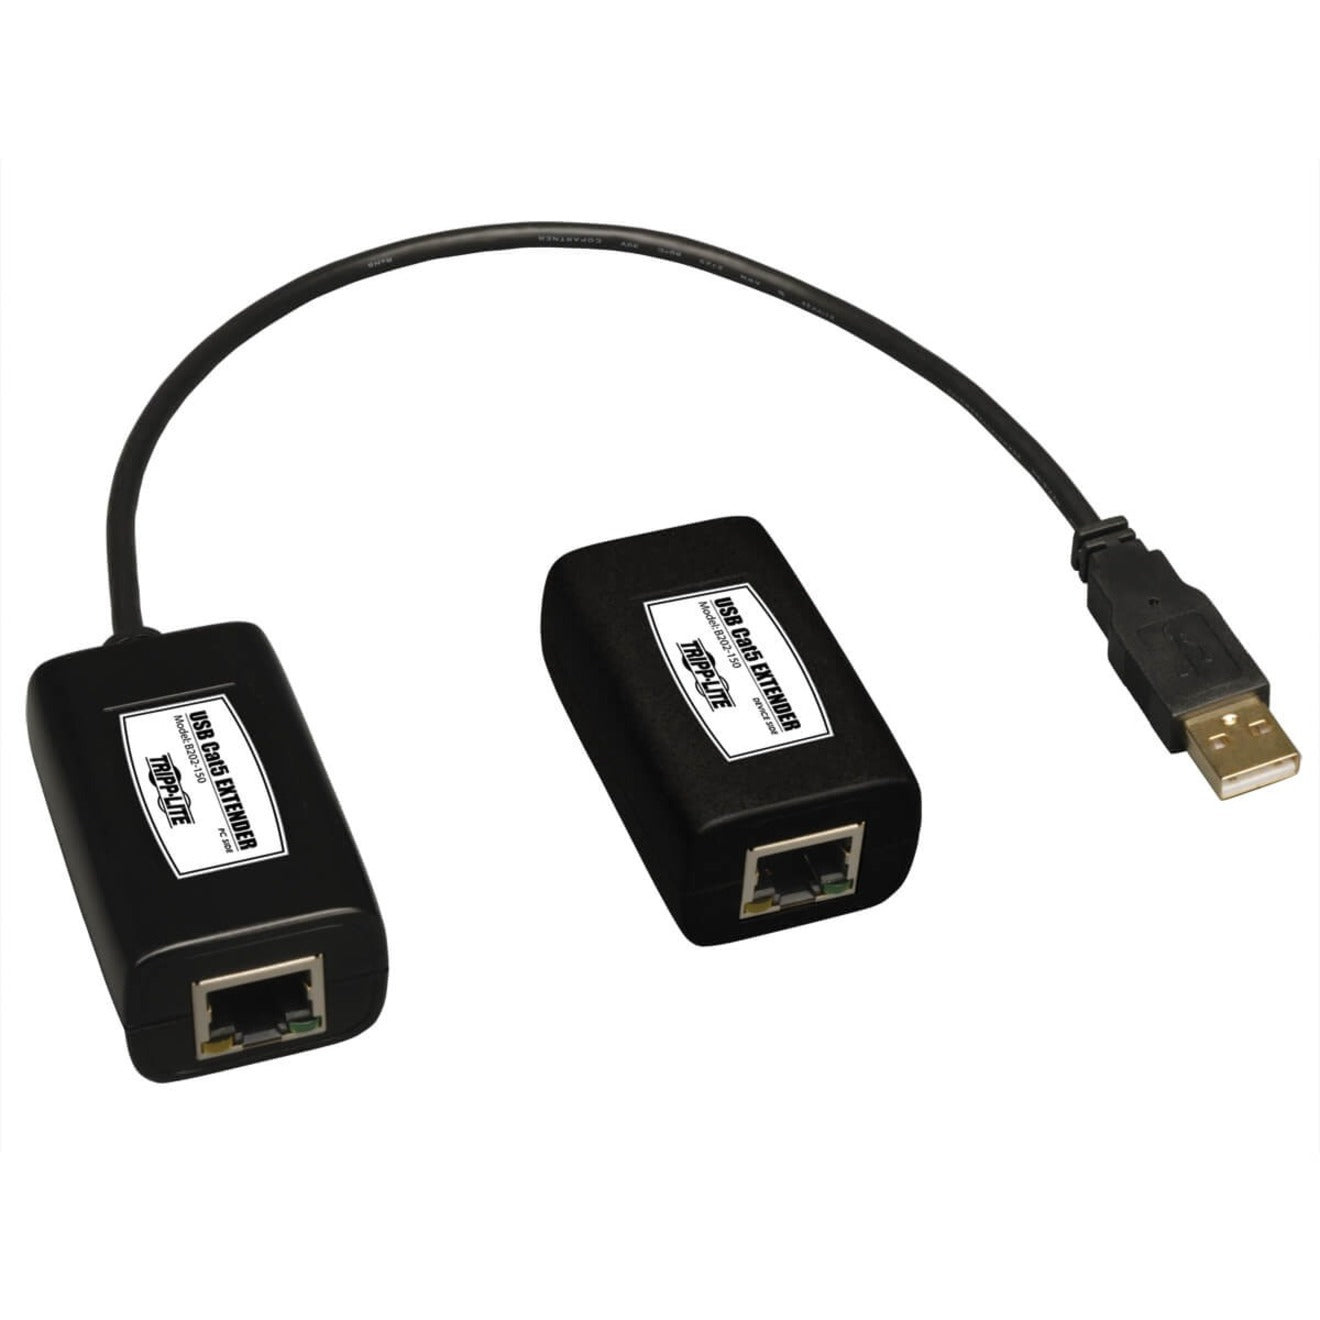 Tripp Lite B202-150 USB Extender、USBケーブル距離を150フィート延長【Tripp Lite】